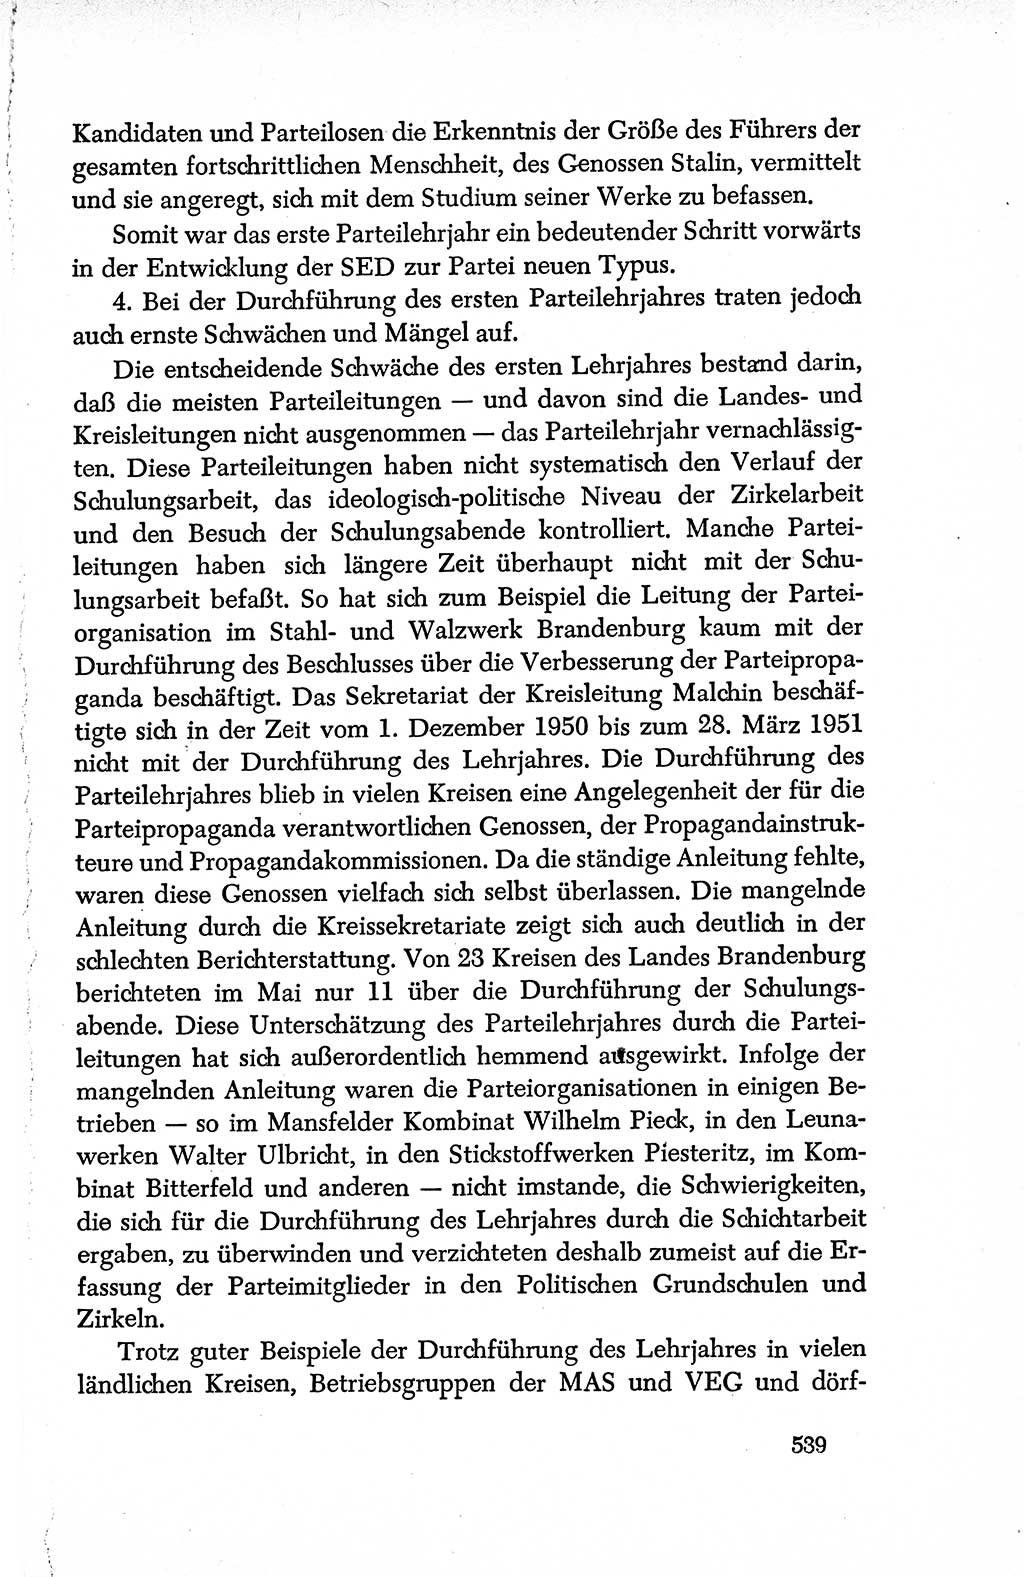 Dokumente der Sozialistischen Einheitspartei Deutschlands (SED) [Deutsche Demokratische Republik (DDR)] 1950-1952, Seite 539 (Dok. SED DDR 1950-1952, S. 539)